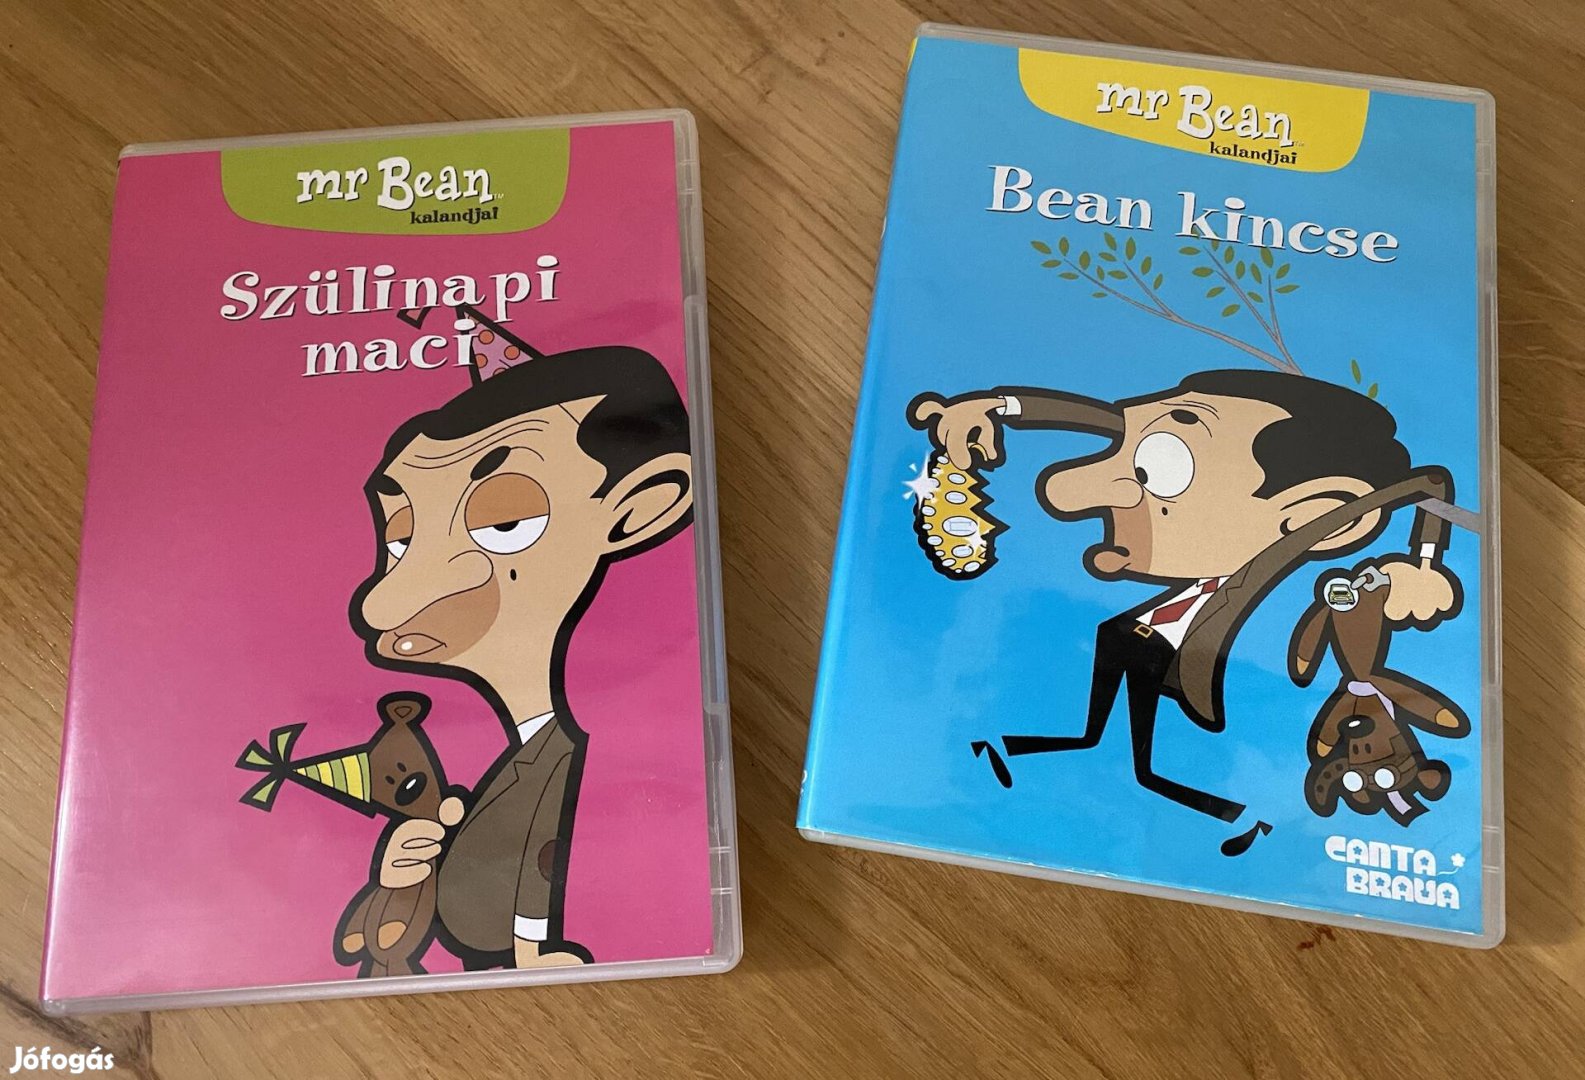 Mr Bean kalandjai DVD eladó